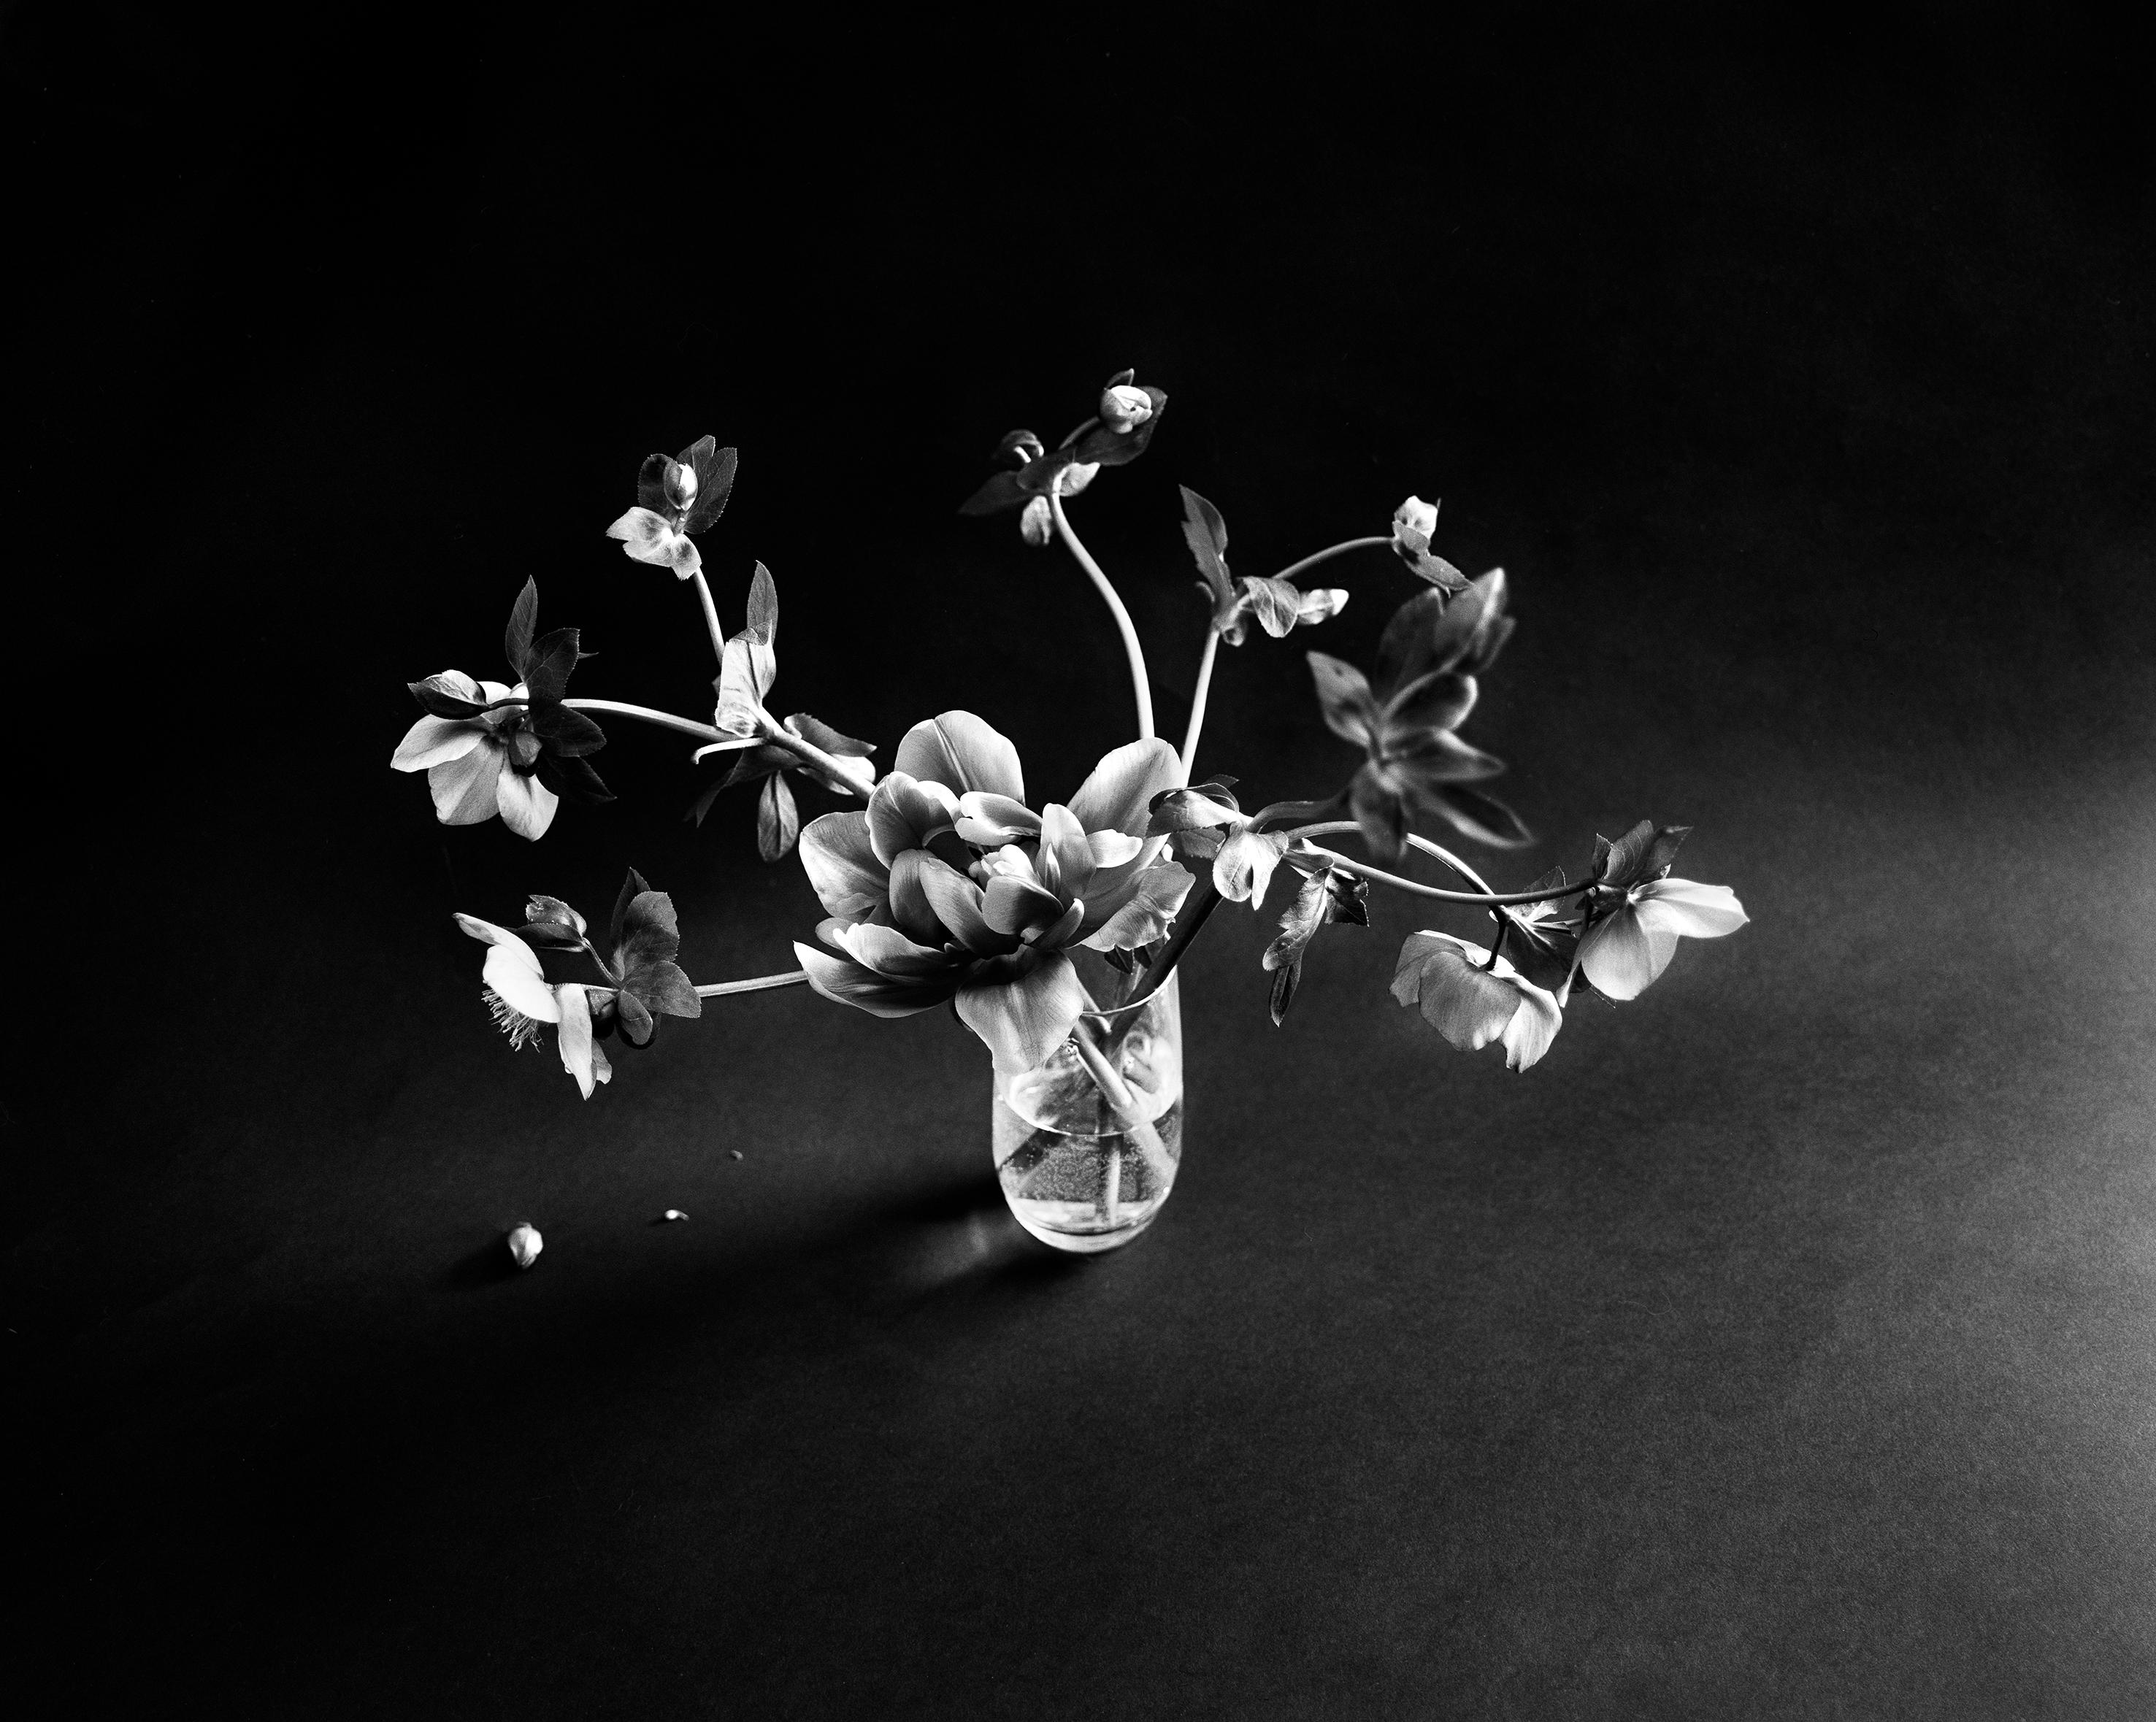 Schwarzer Hellebore auf Schwarz - Blumenfotografie, limitierte Auflage von 20 Stück 